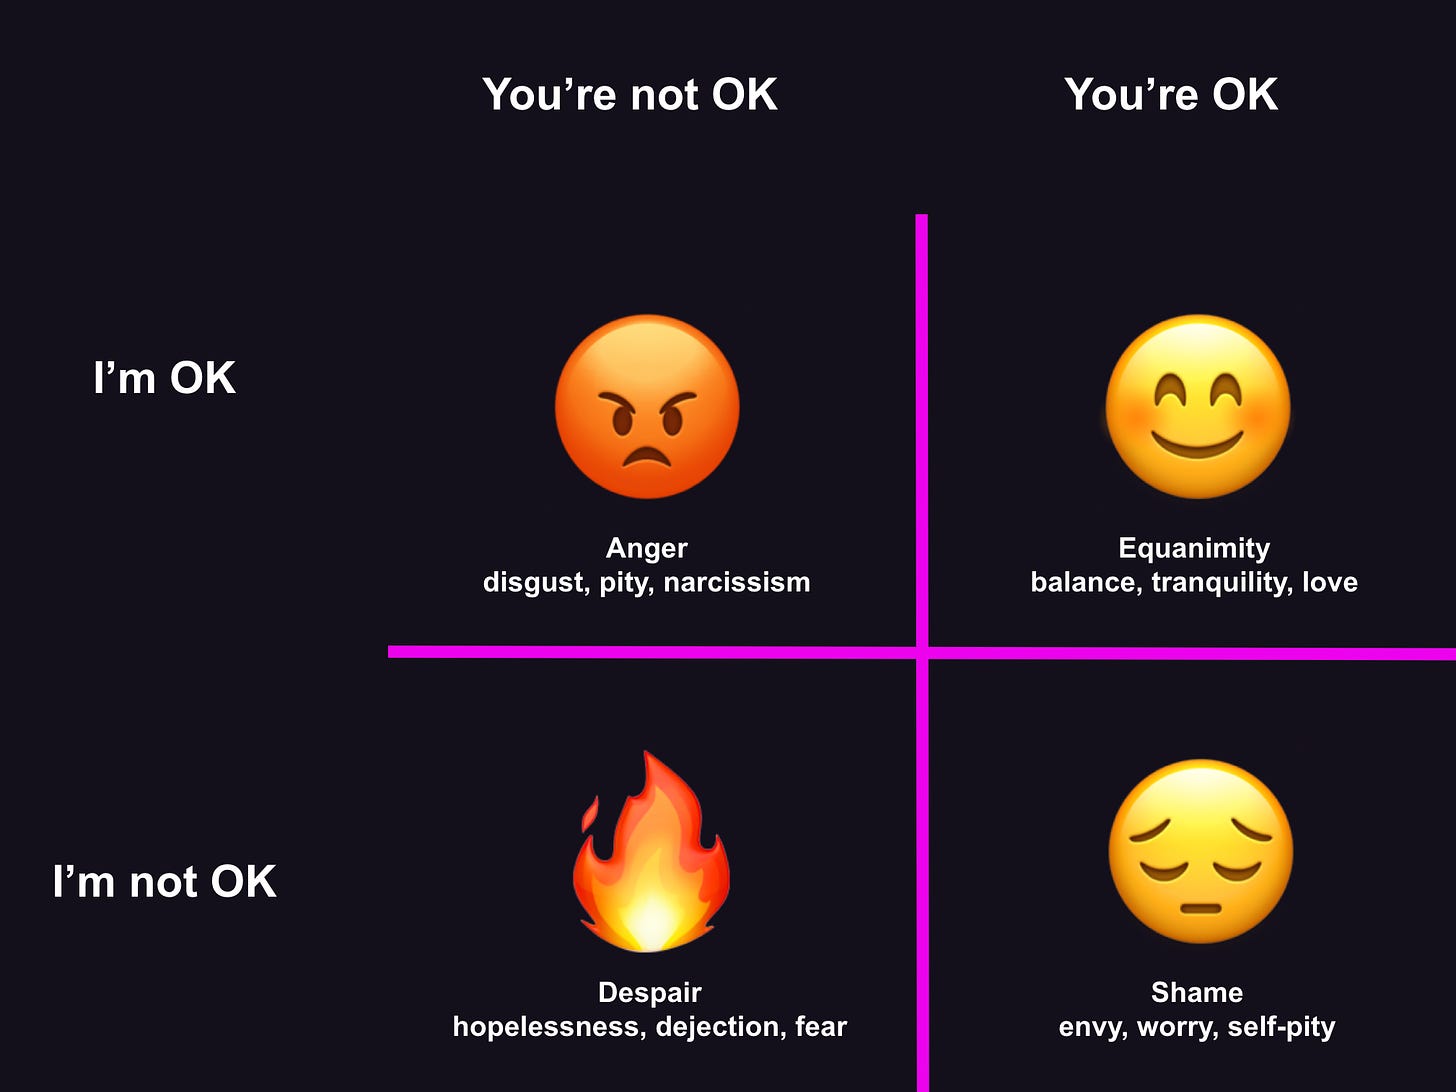 Four quadrants: I'm OK You're OK (joy love affection bliss); I'm OK You're not OK (anger spite hatred resentment); I'm not OK you're OK (shame envy guilt sadness); I'm not OK you're not OK (despair hopelessness depression)